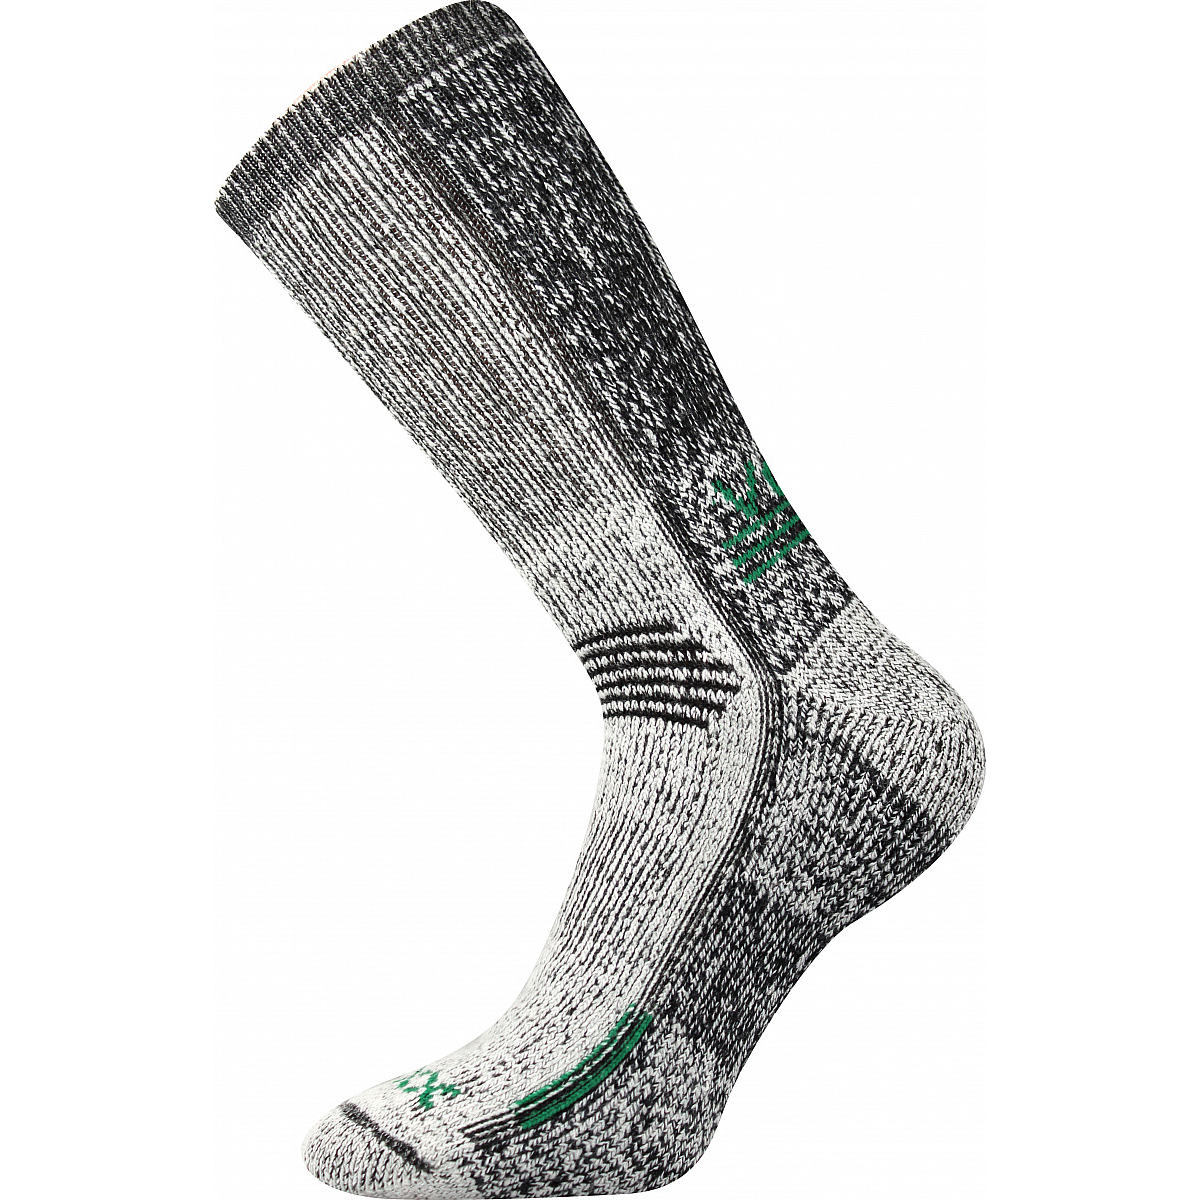 Extra teplé vlněné ponožky Voxx Orbit - šedé-zelené, 43-46